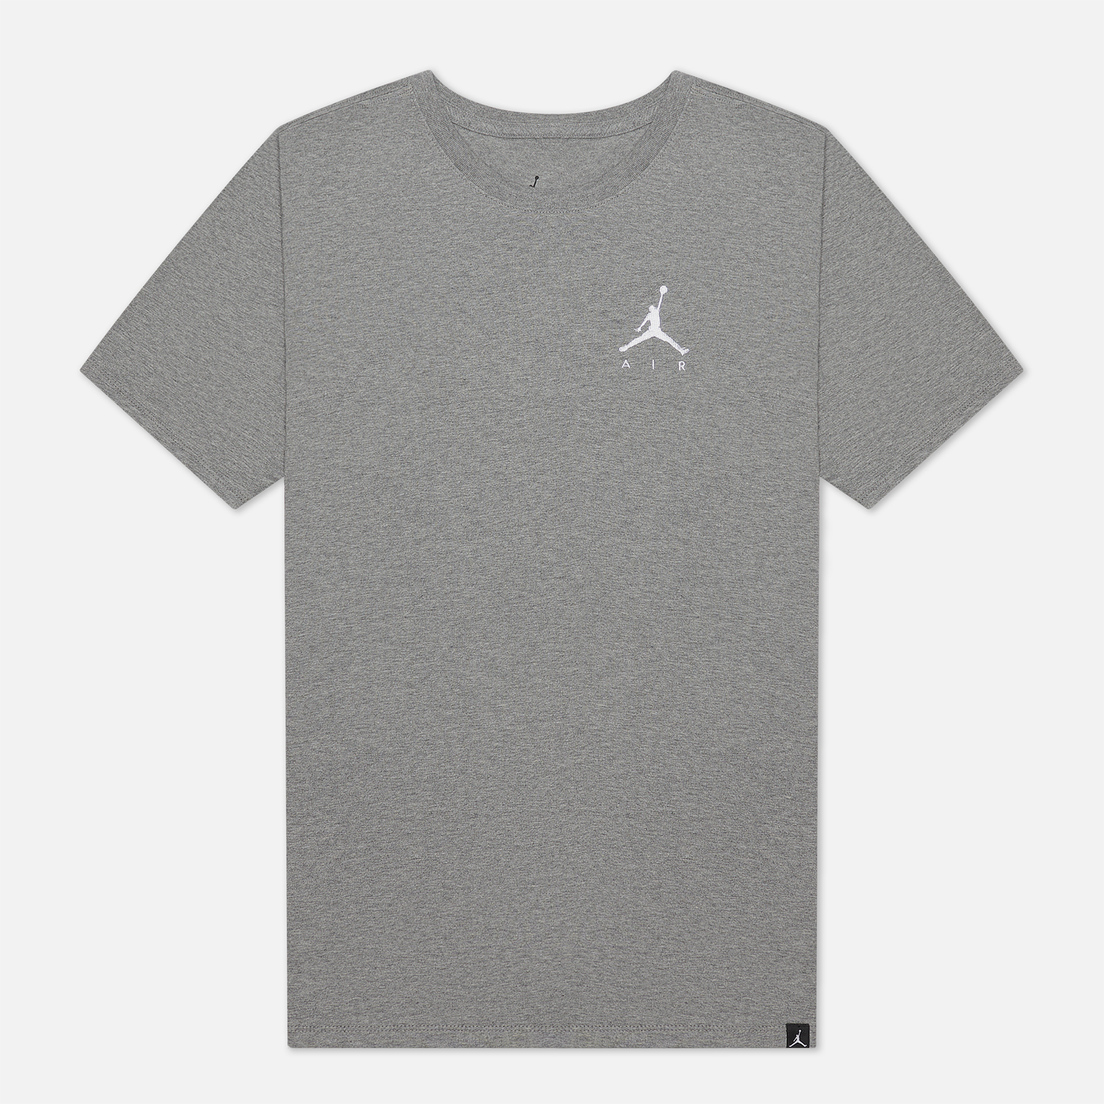 Jordan Мужская футболка Jumpman Air Embroidered